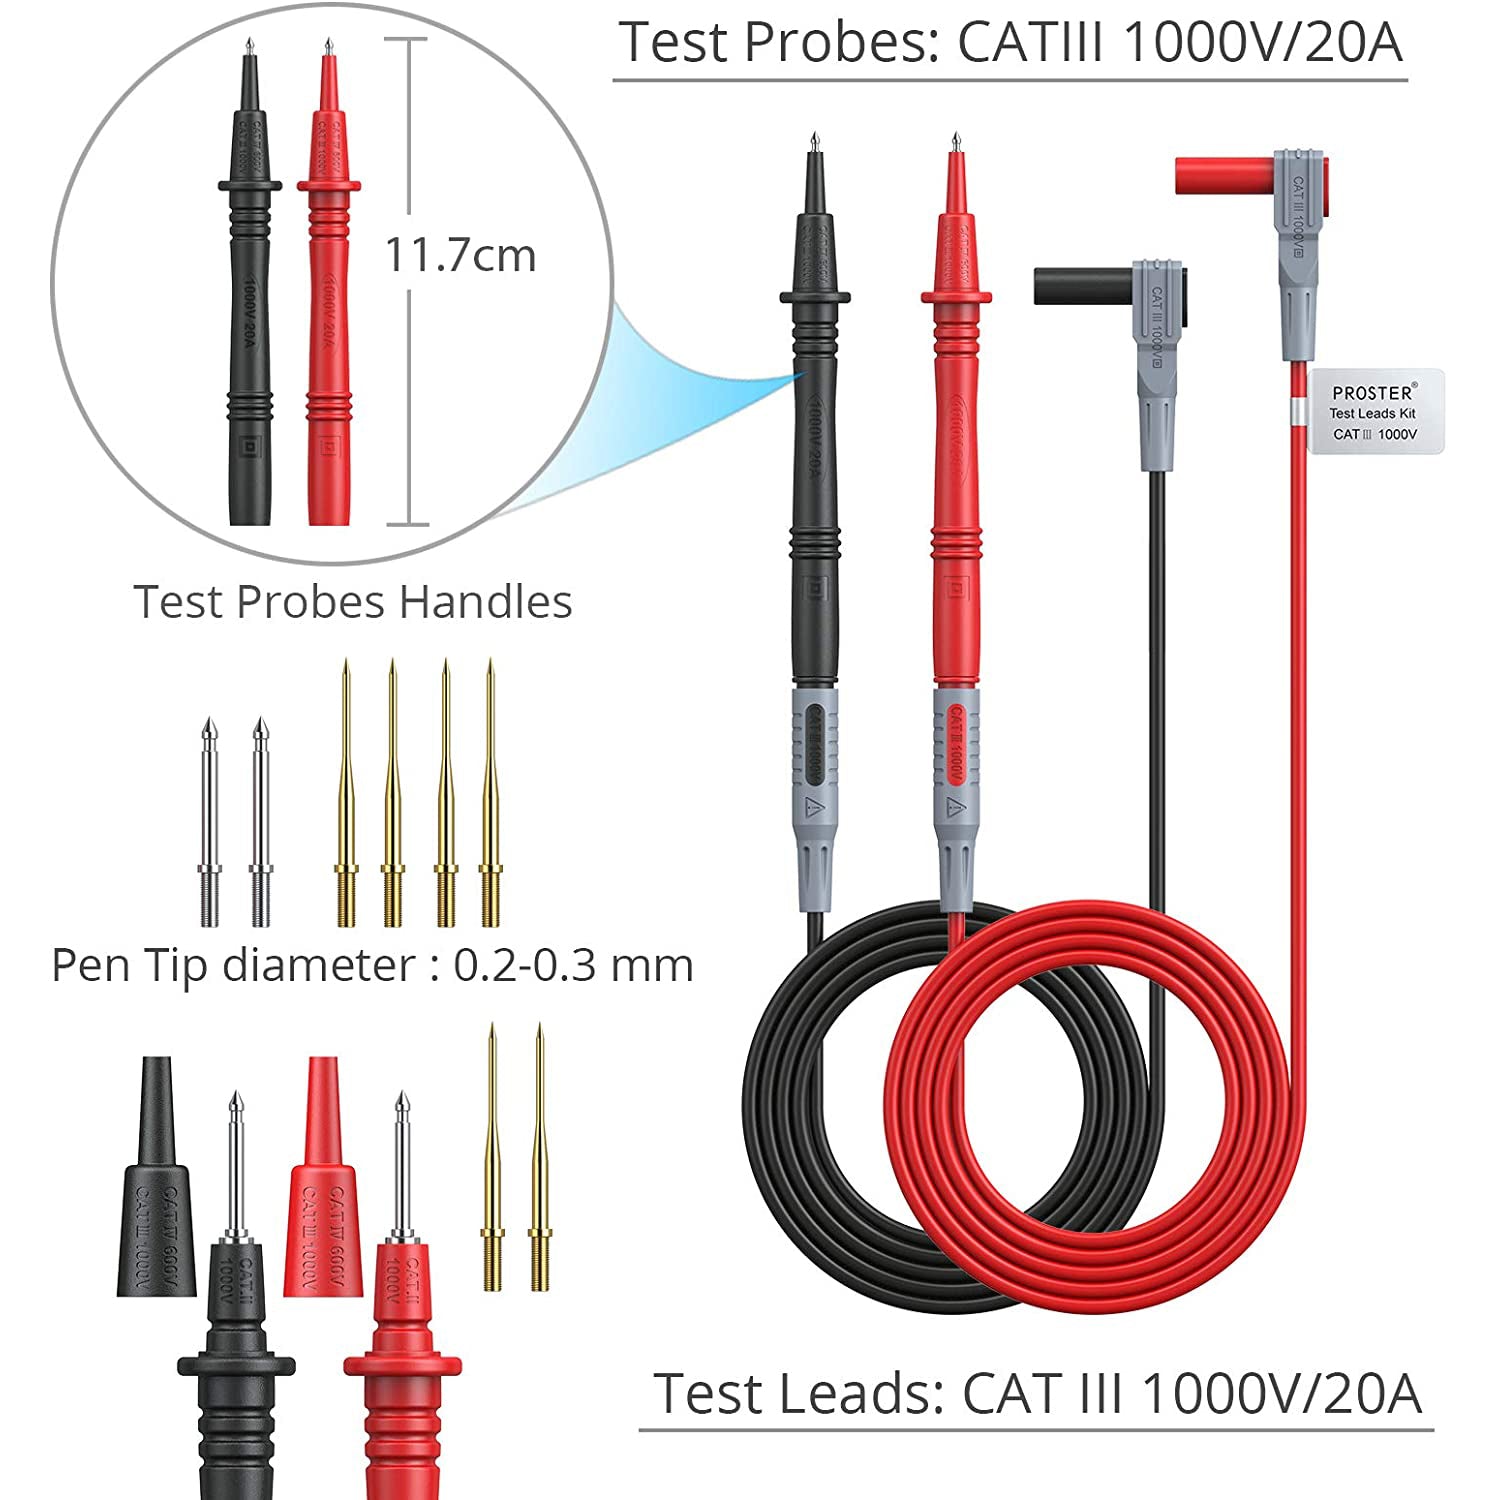 Proster Multimeter Test Leads Kit